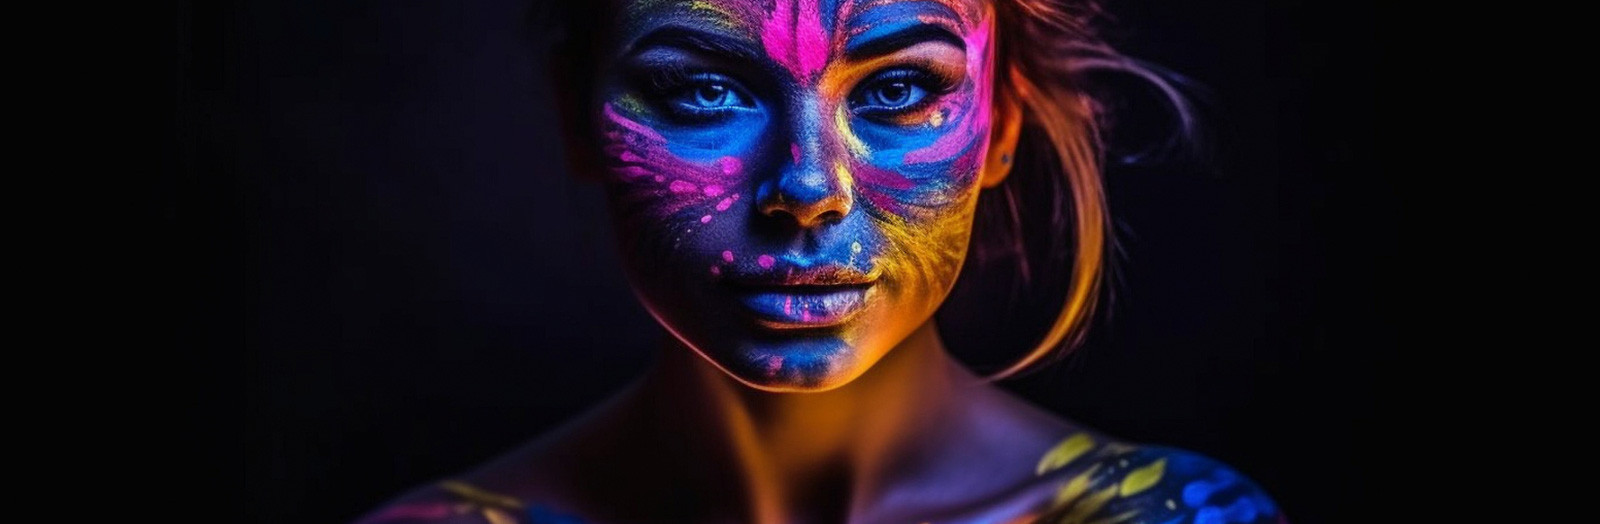 Maquillage Fluorescent Coloré Sur Le Visage De L'homme